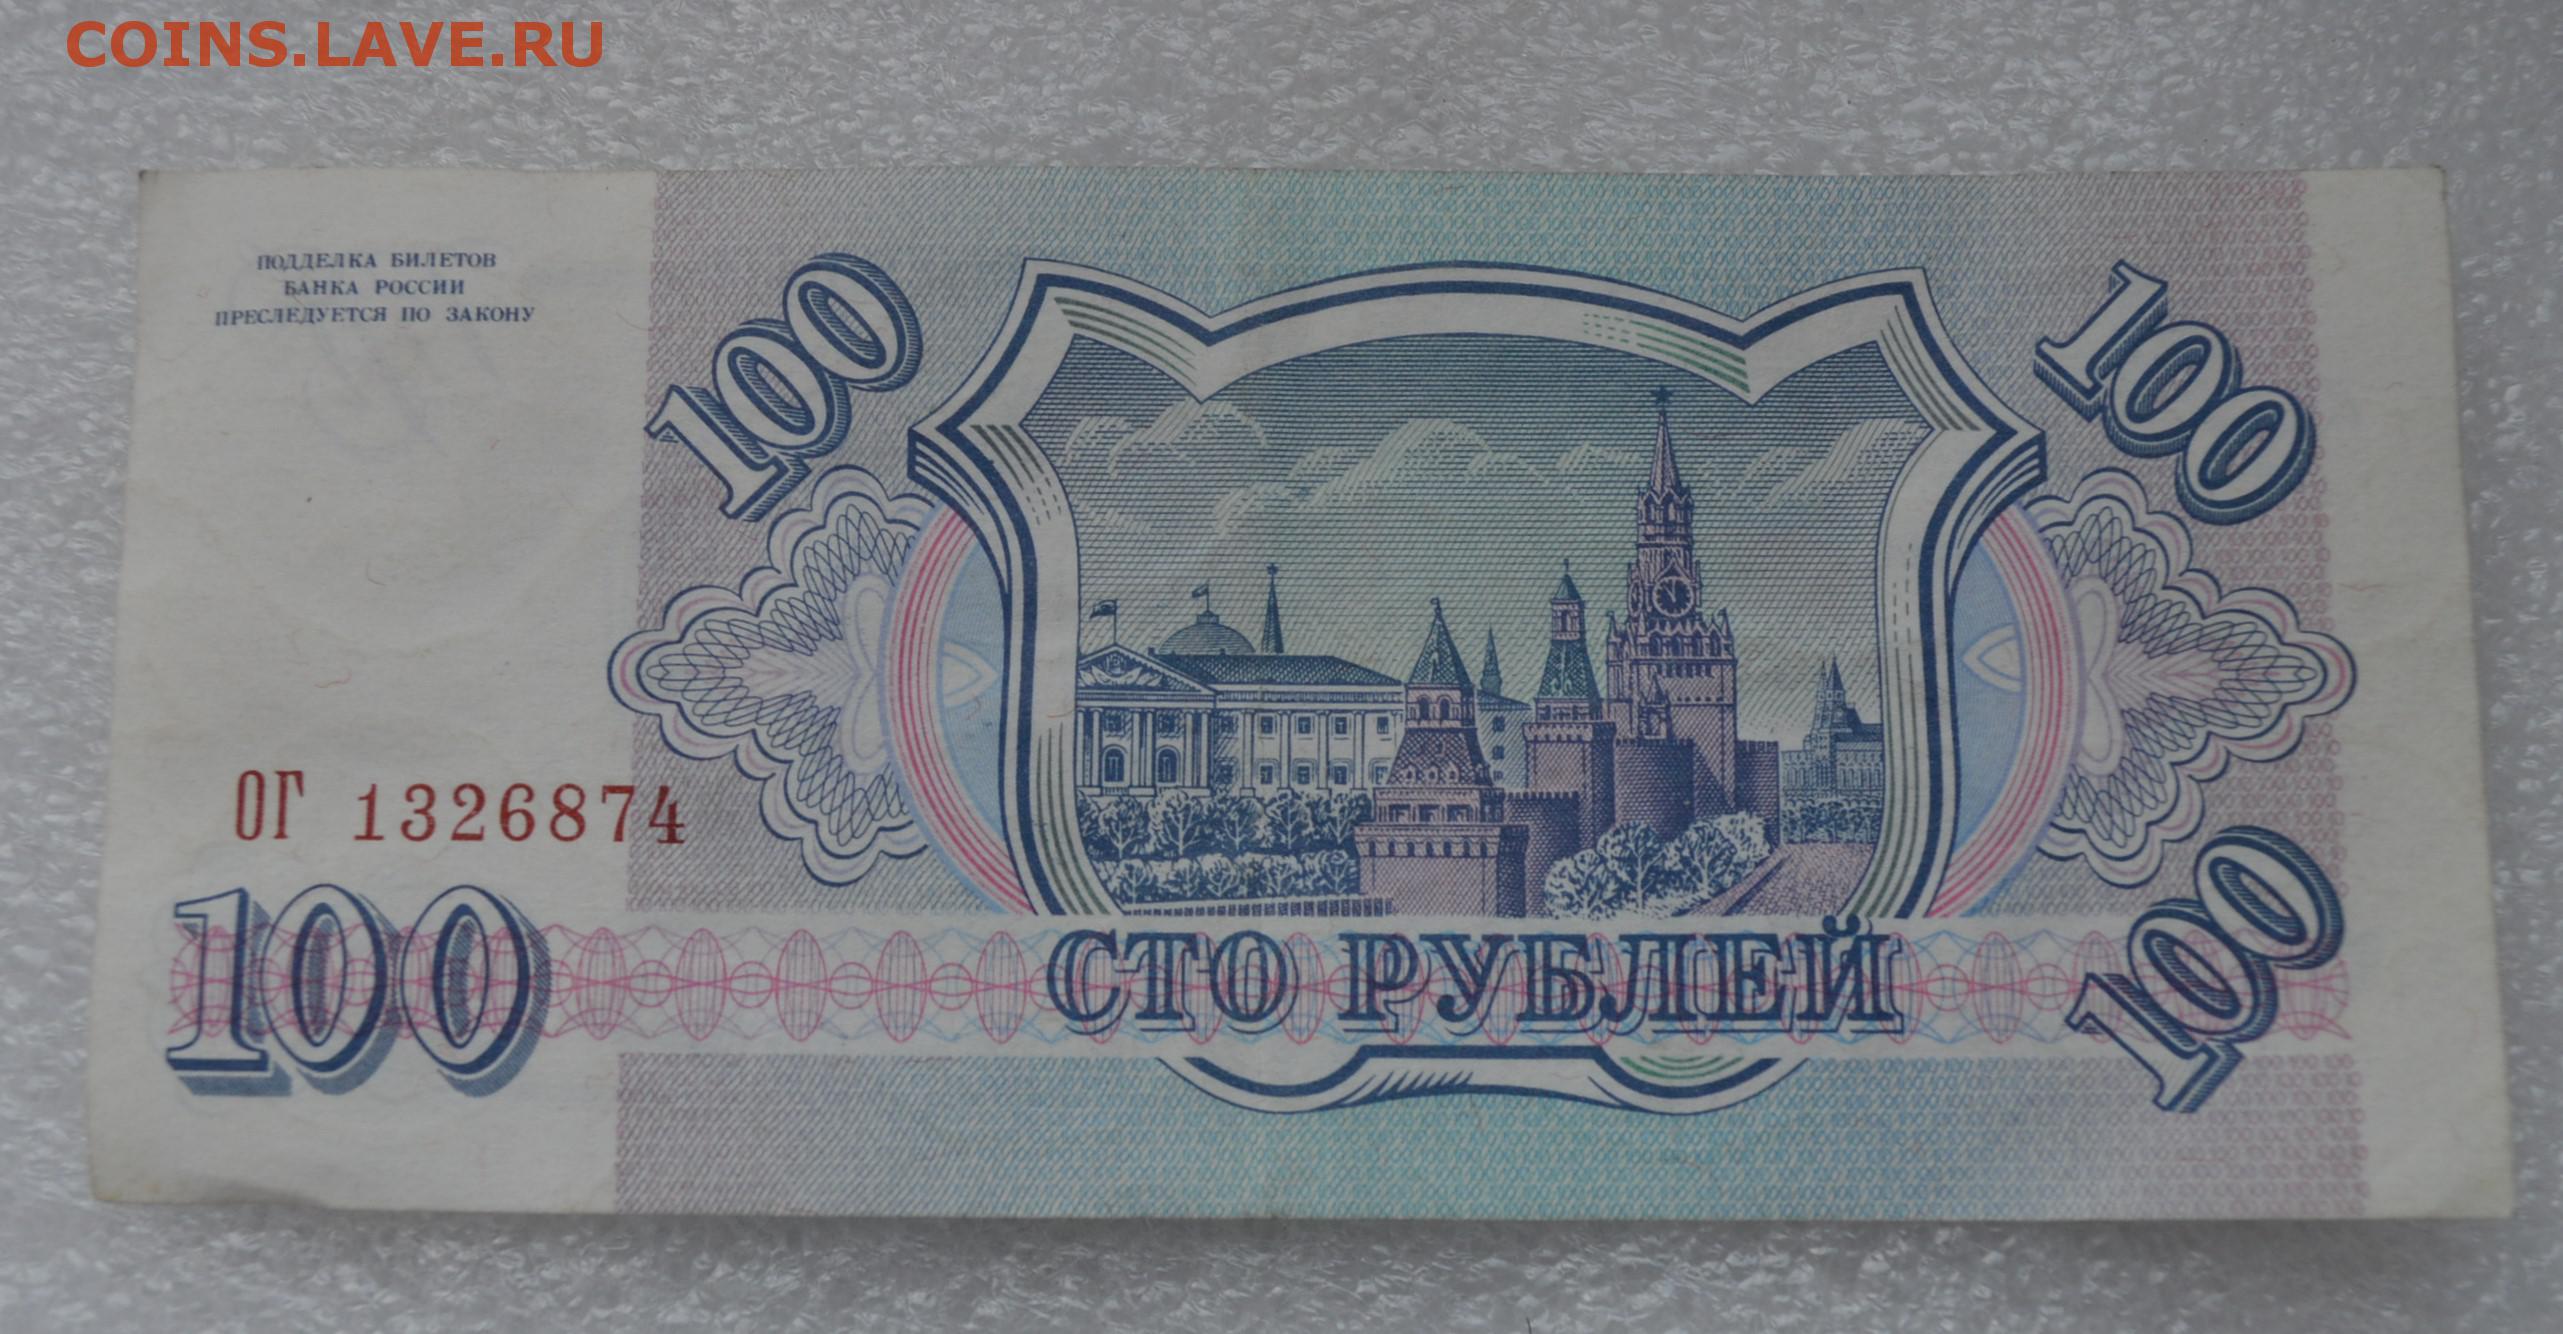 200 рублей 90. 200 Рублей 1993 года. 100 И 200 рублей 1993. 200 Рублей 93 года. 200 Рублей 1993г.